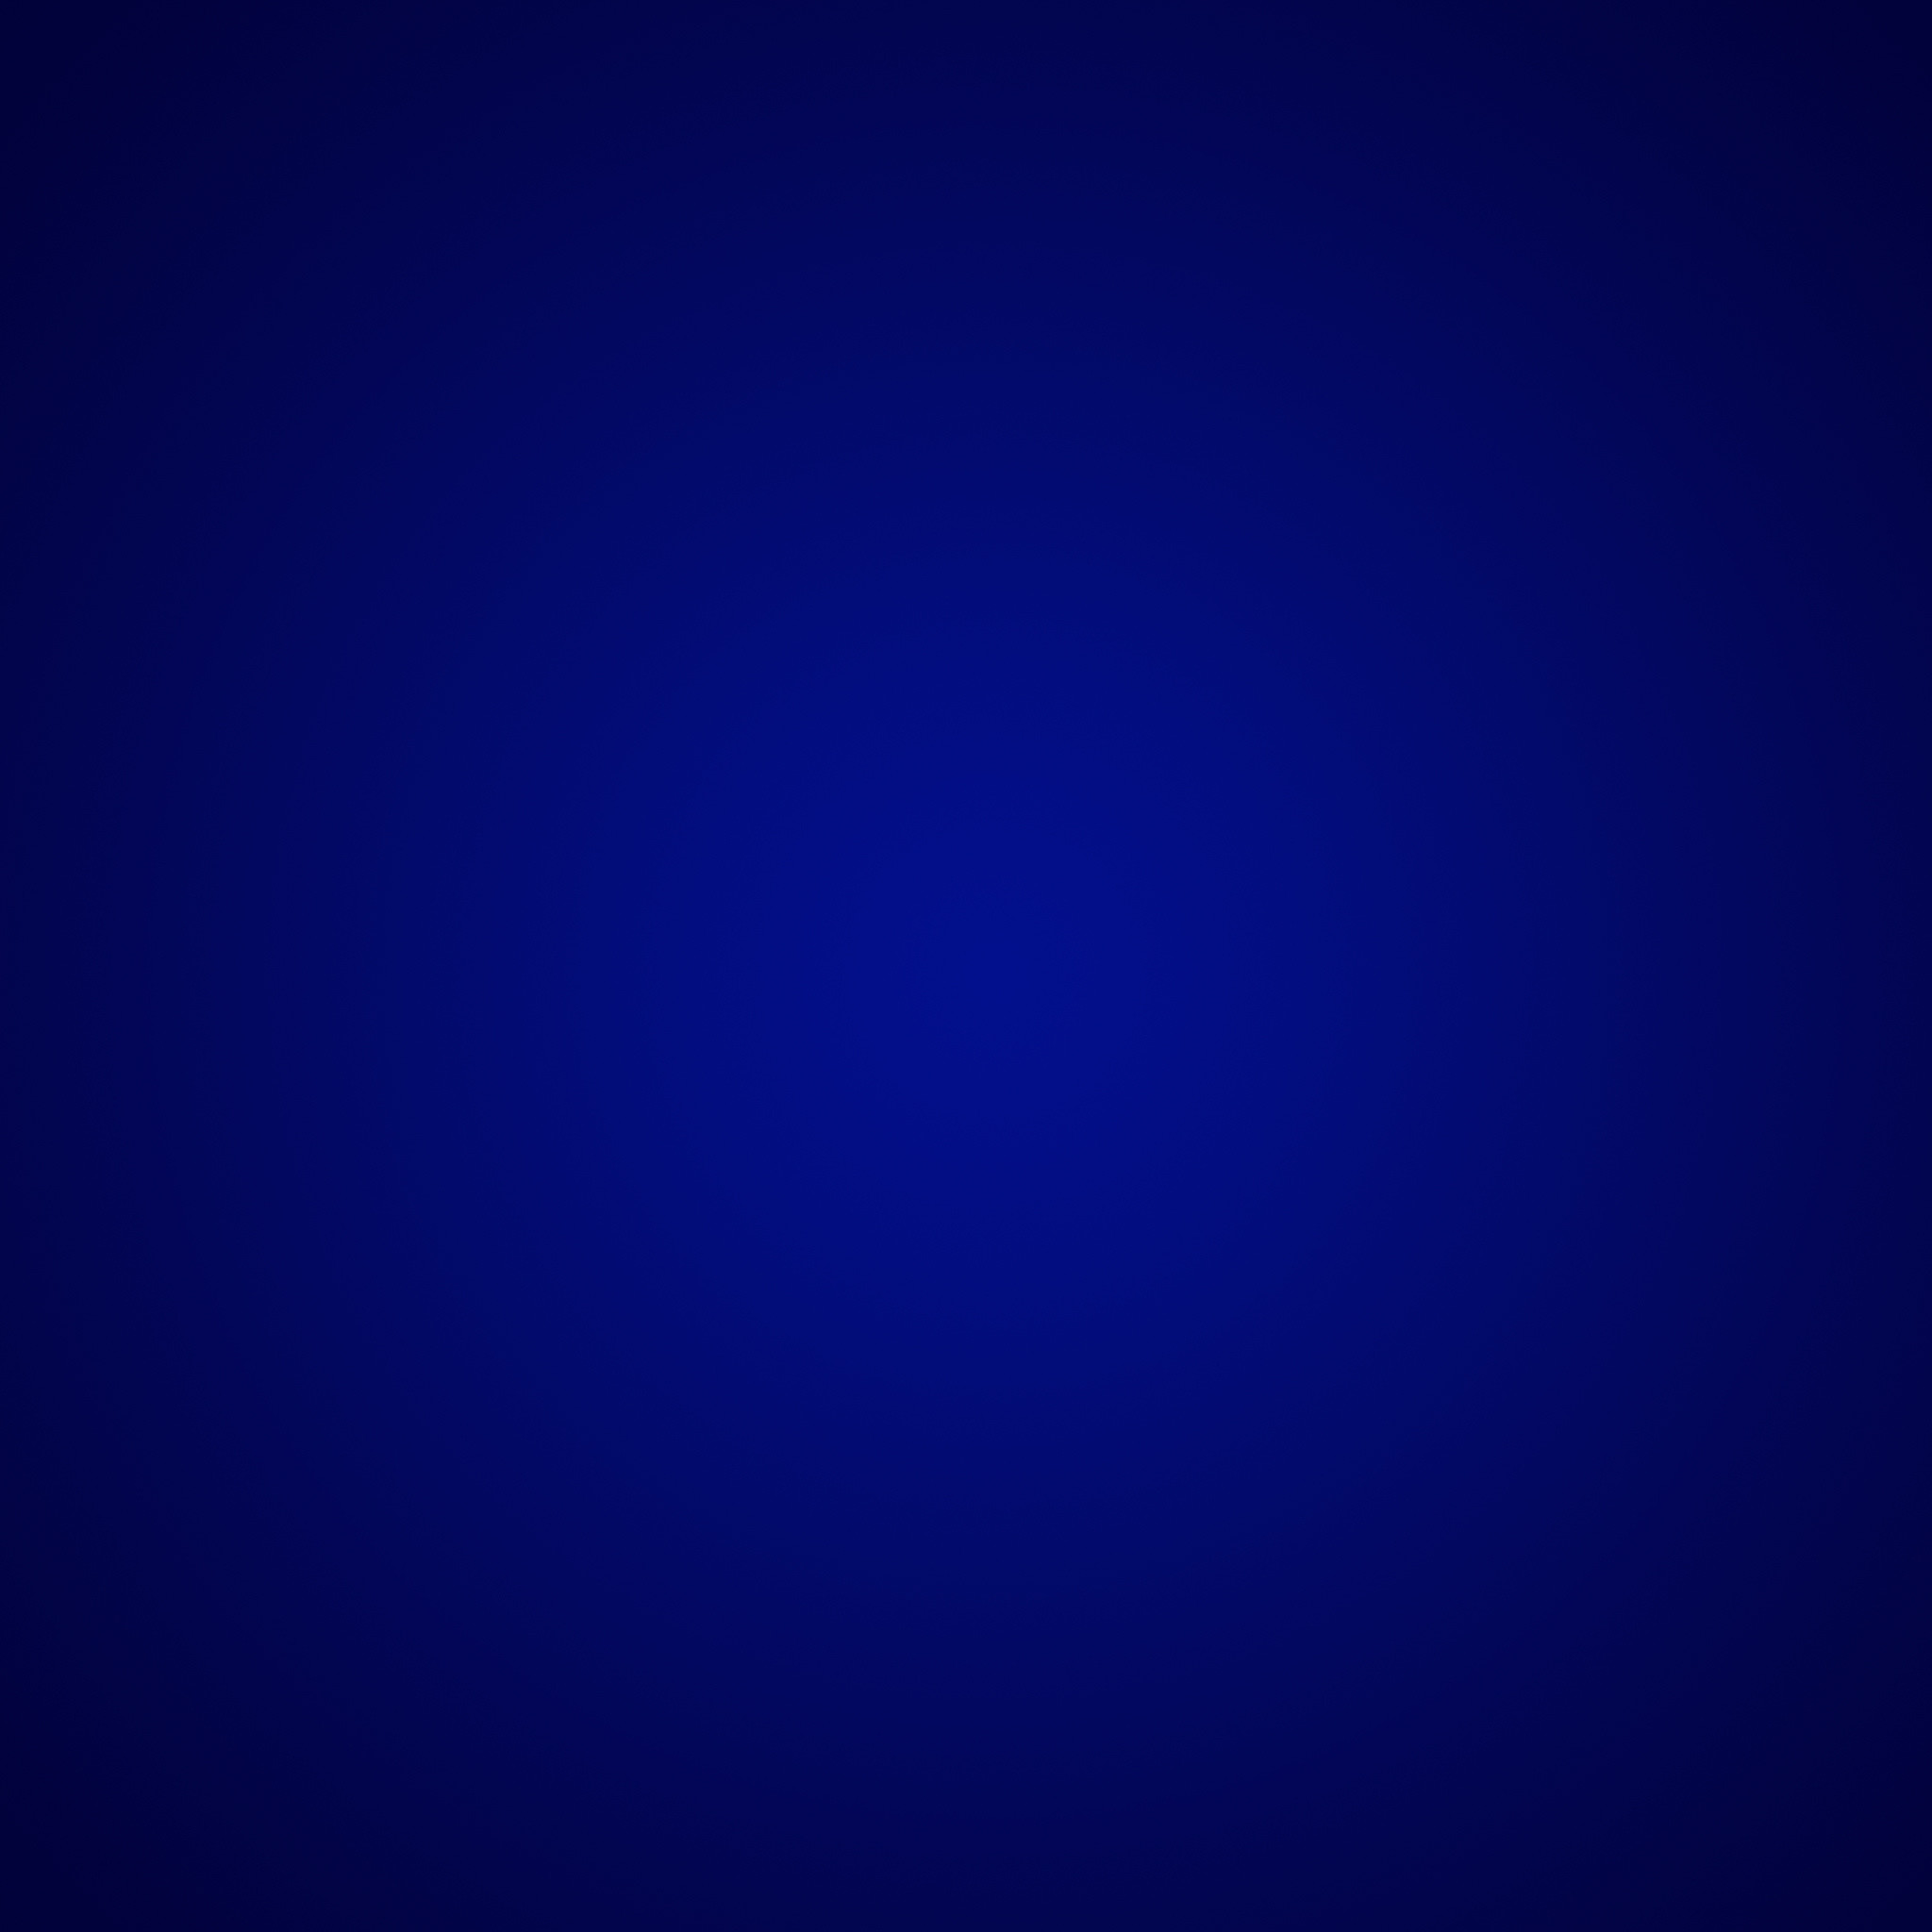 Plain Blue Wallpaper Data-src - Darkness - 2048x2048 Wallpaper 